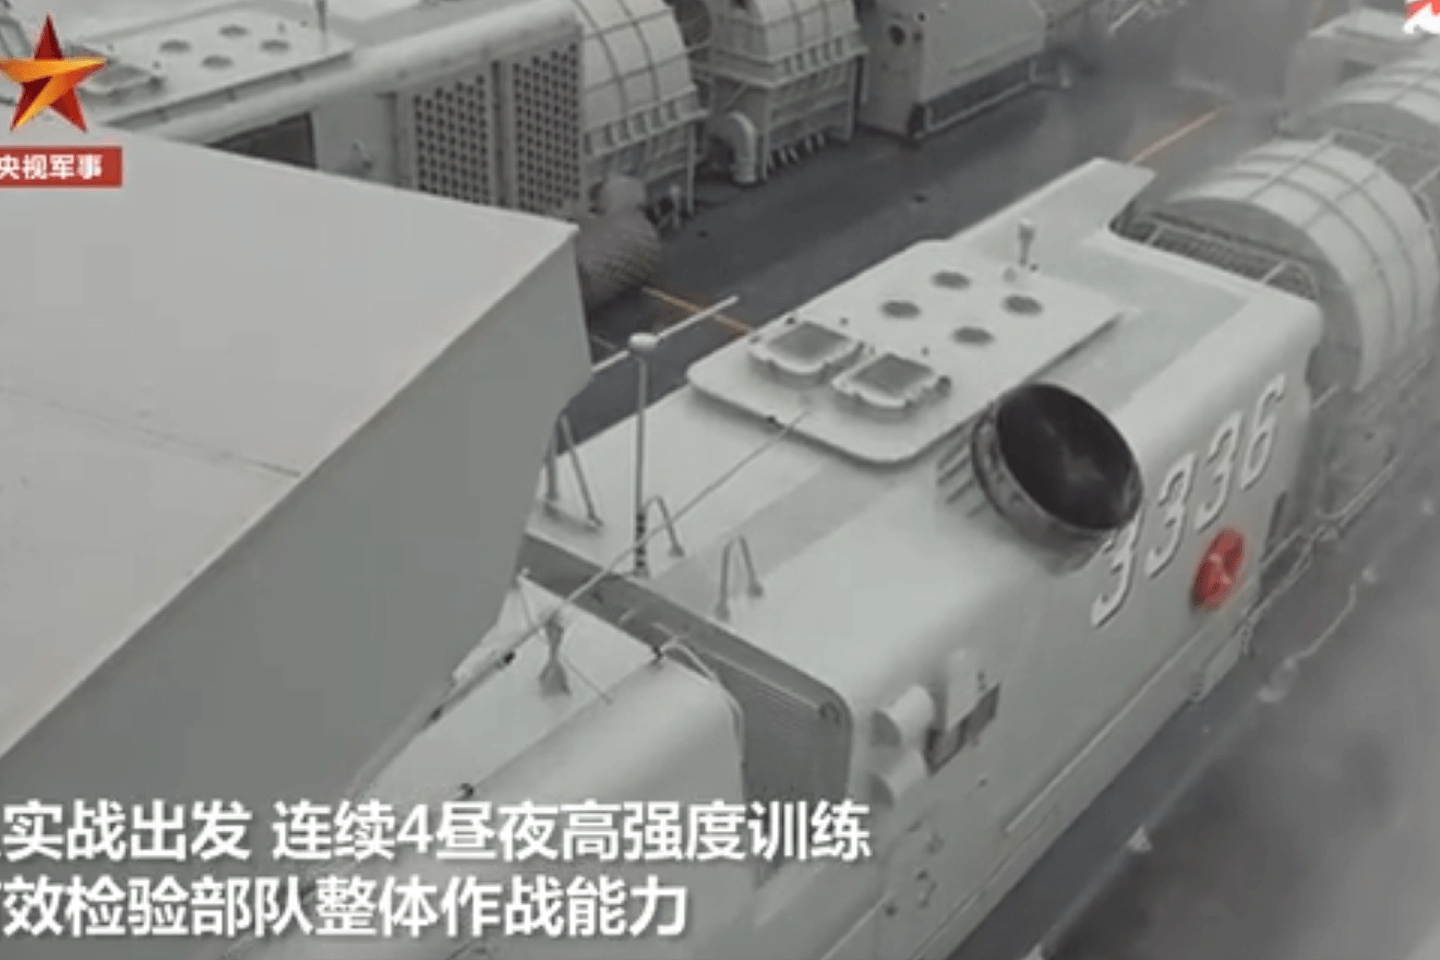 中国海军“3336”号726型气垫登陆艇出现在此次演练中。（中国央视军事截图）